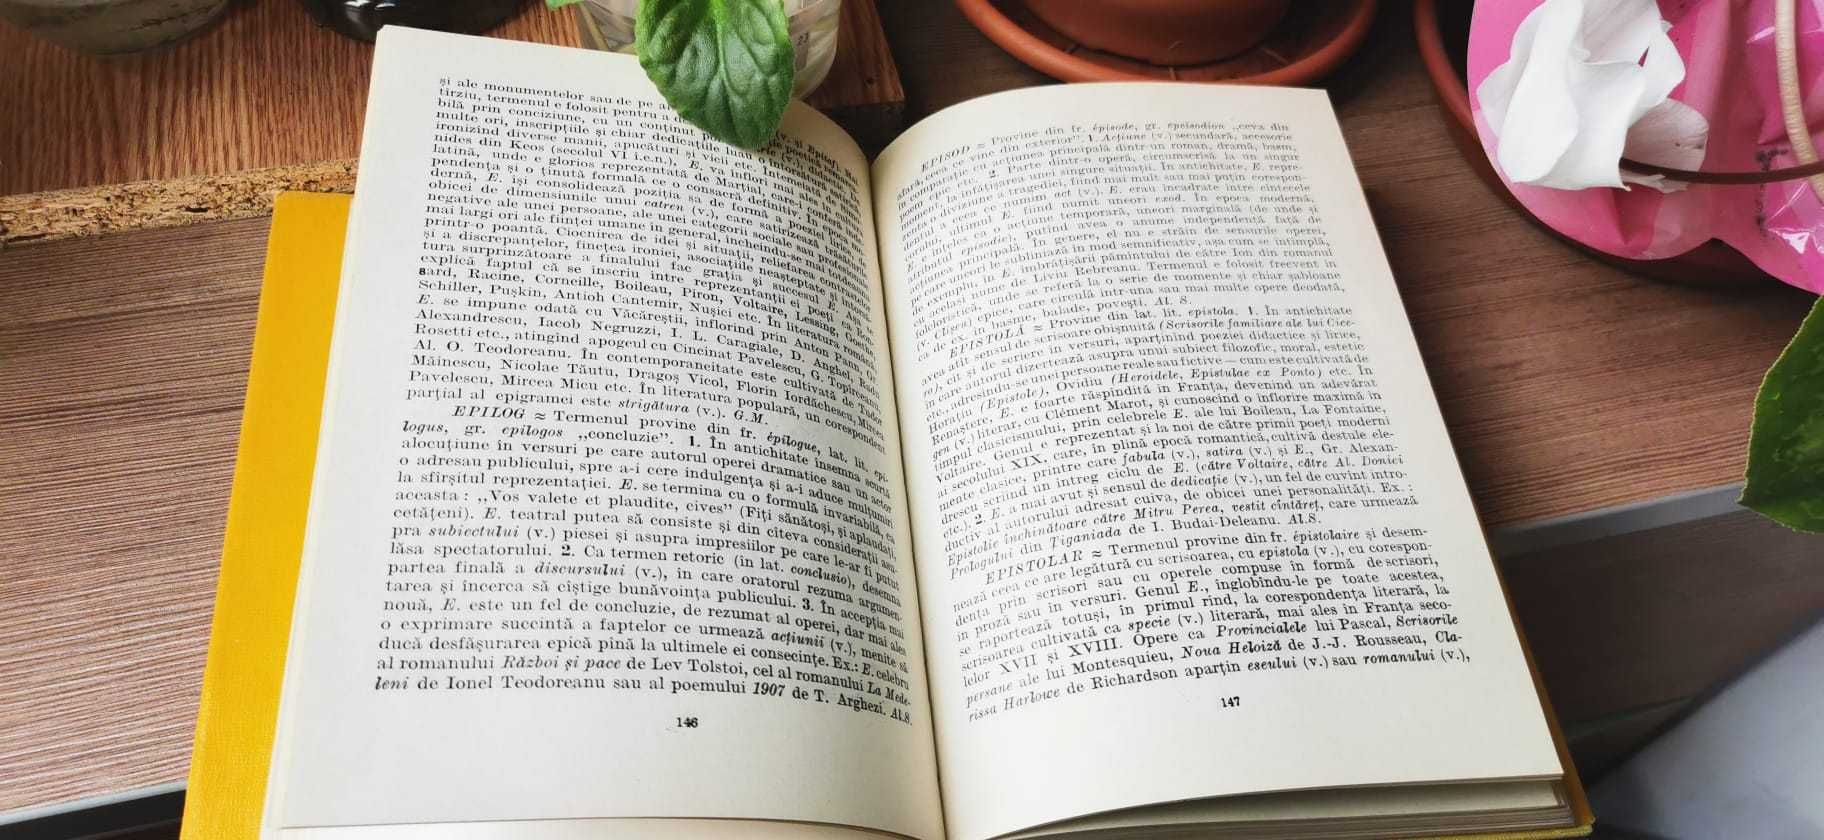 DEX,1984 si Dictionar de termeni literari, Alexandru Stefanescu